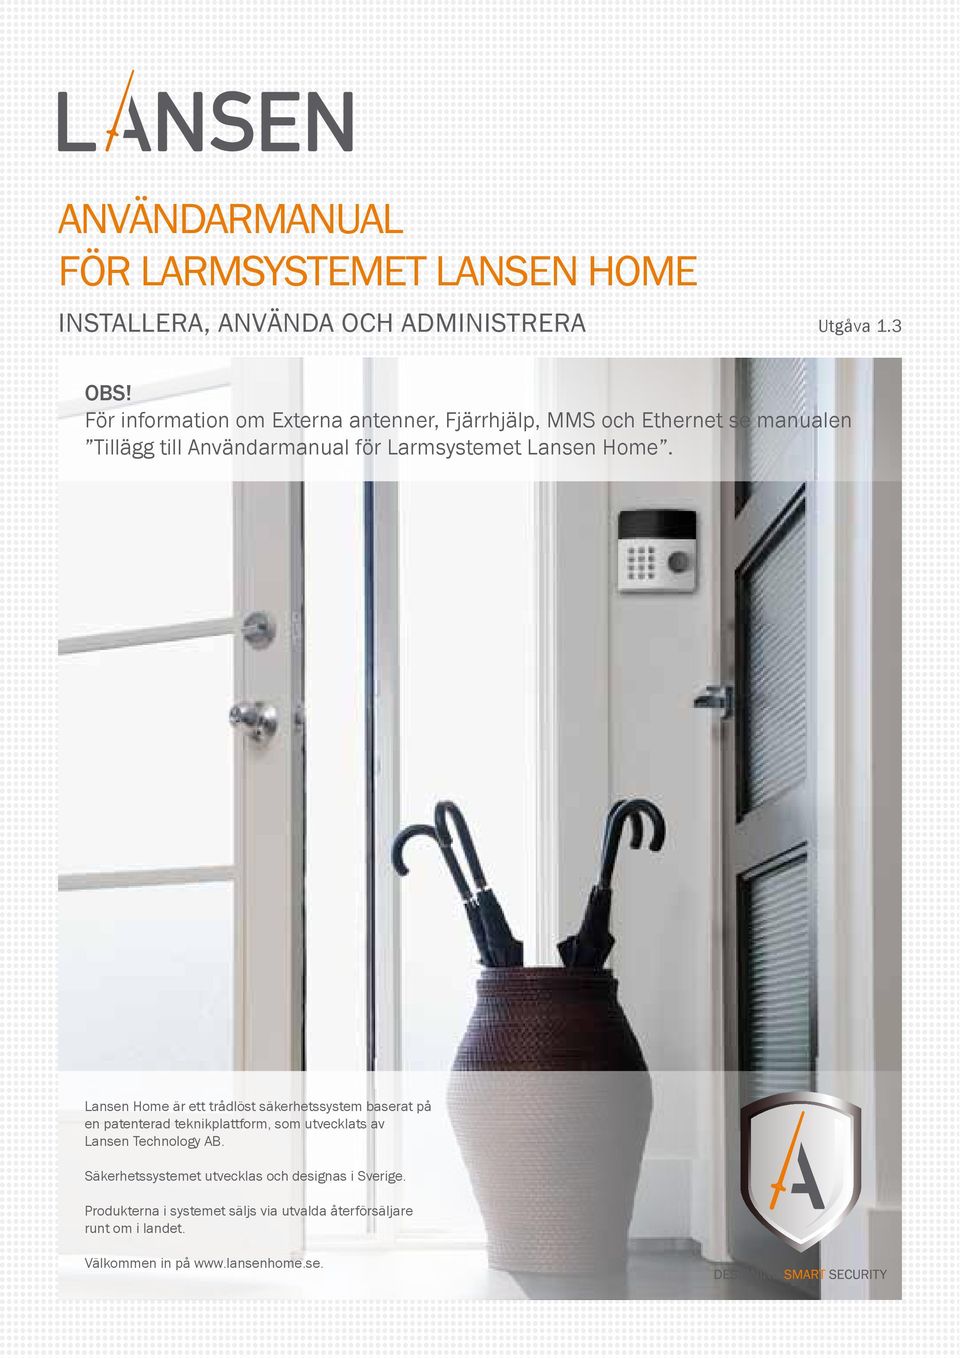 Home. Lansen Home är ett trådlöst säkerhetssystem baserat på en patenterad teknikplattform, som utvecklats av Lansen Technology